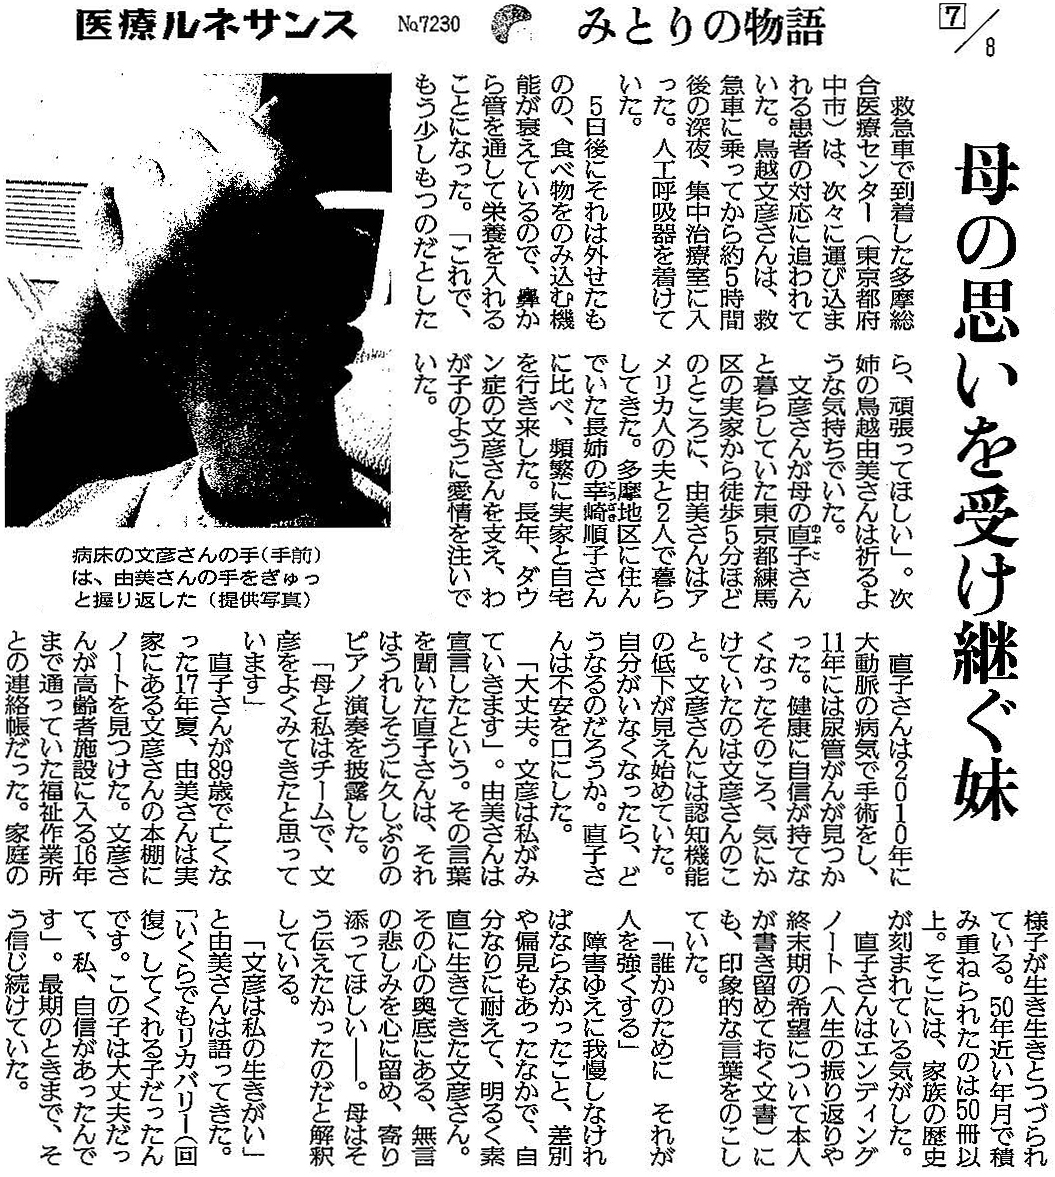 読売新聞 2020年2月27日掲載記事